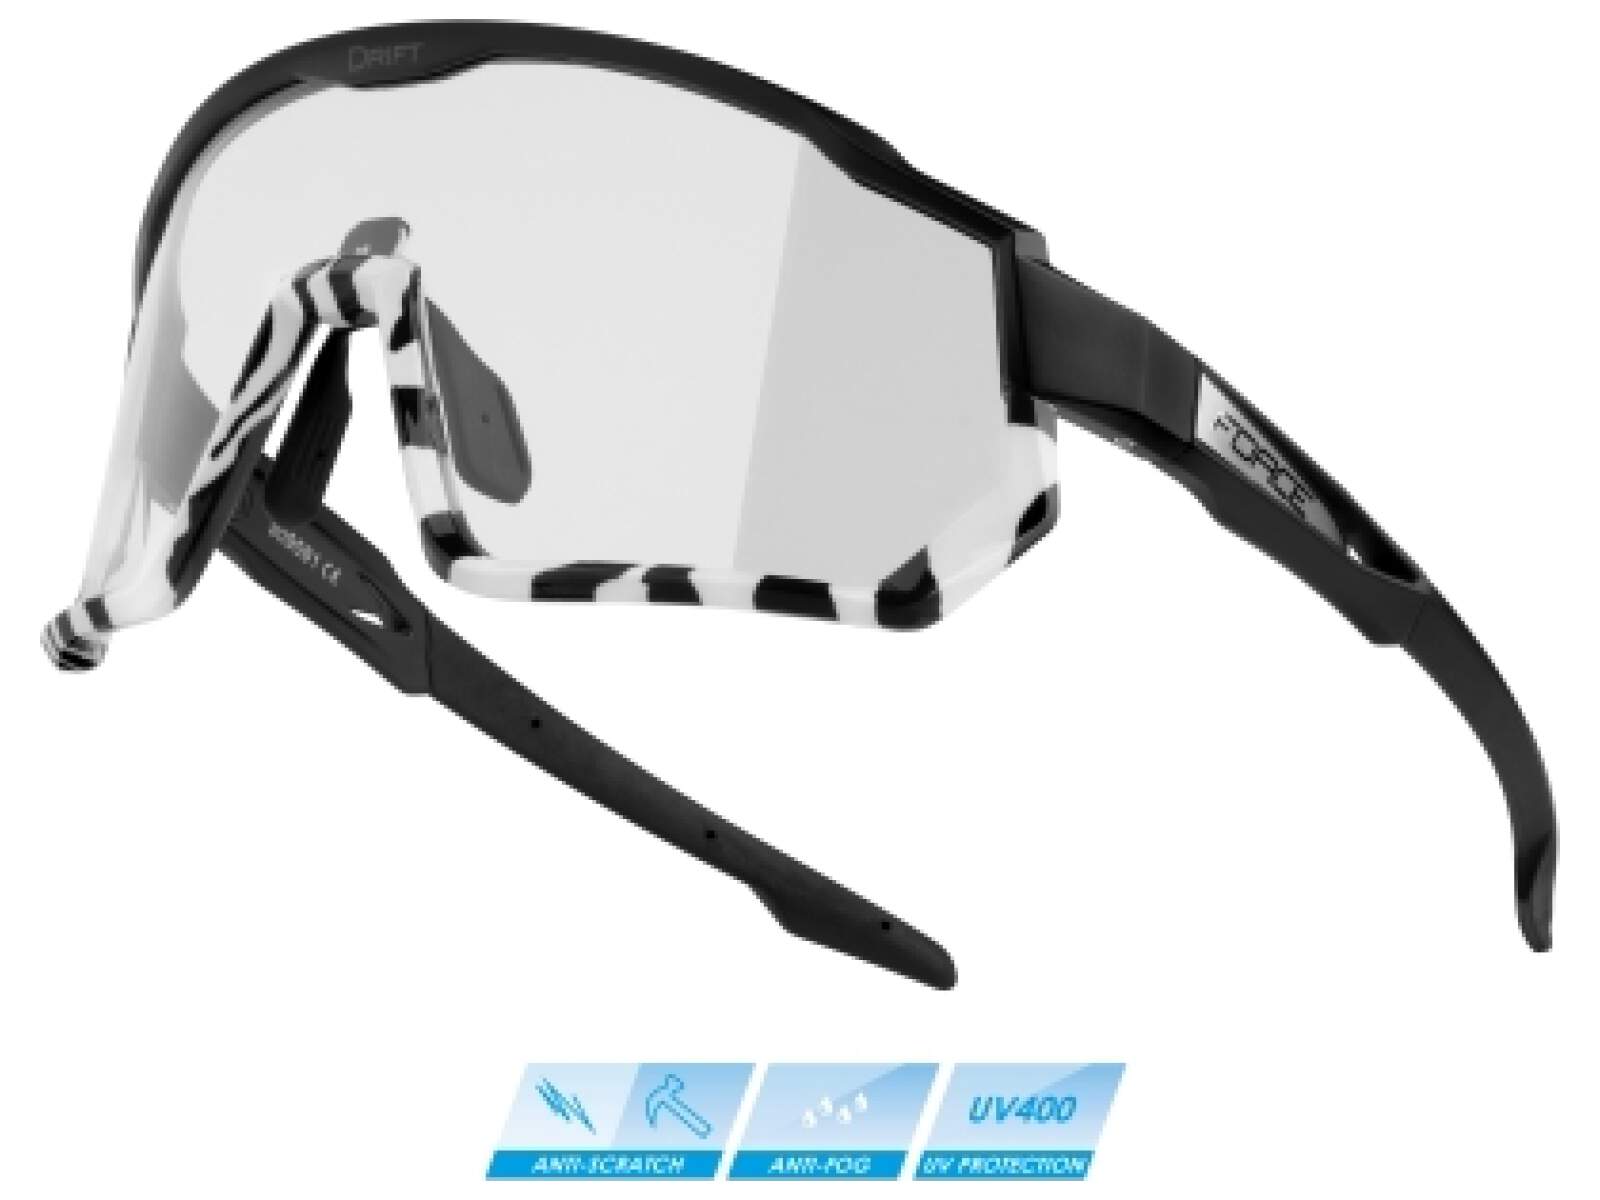 Okulary rowerowe Force DRIFT szkła szare polaryzacyjne